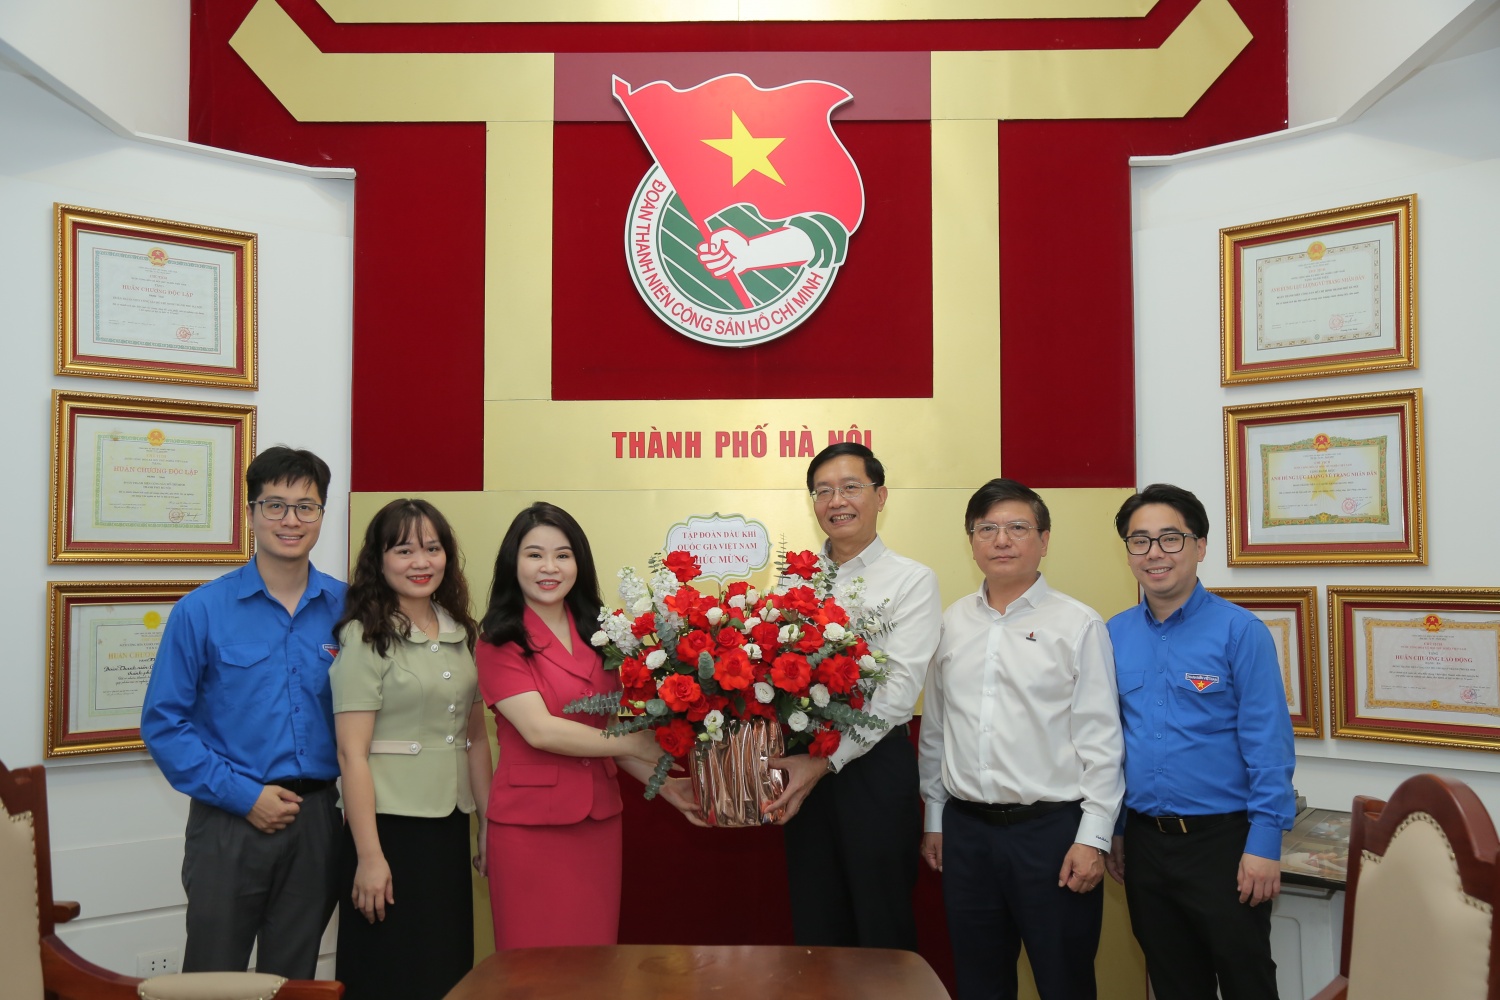 Đảng ủy, Đoàn Thanh niên Tập đoàn chúc mừng Đoàn Khối DNTW, Thành đoàn Hà Nội